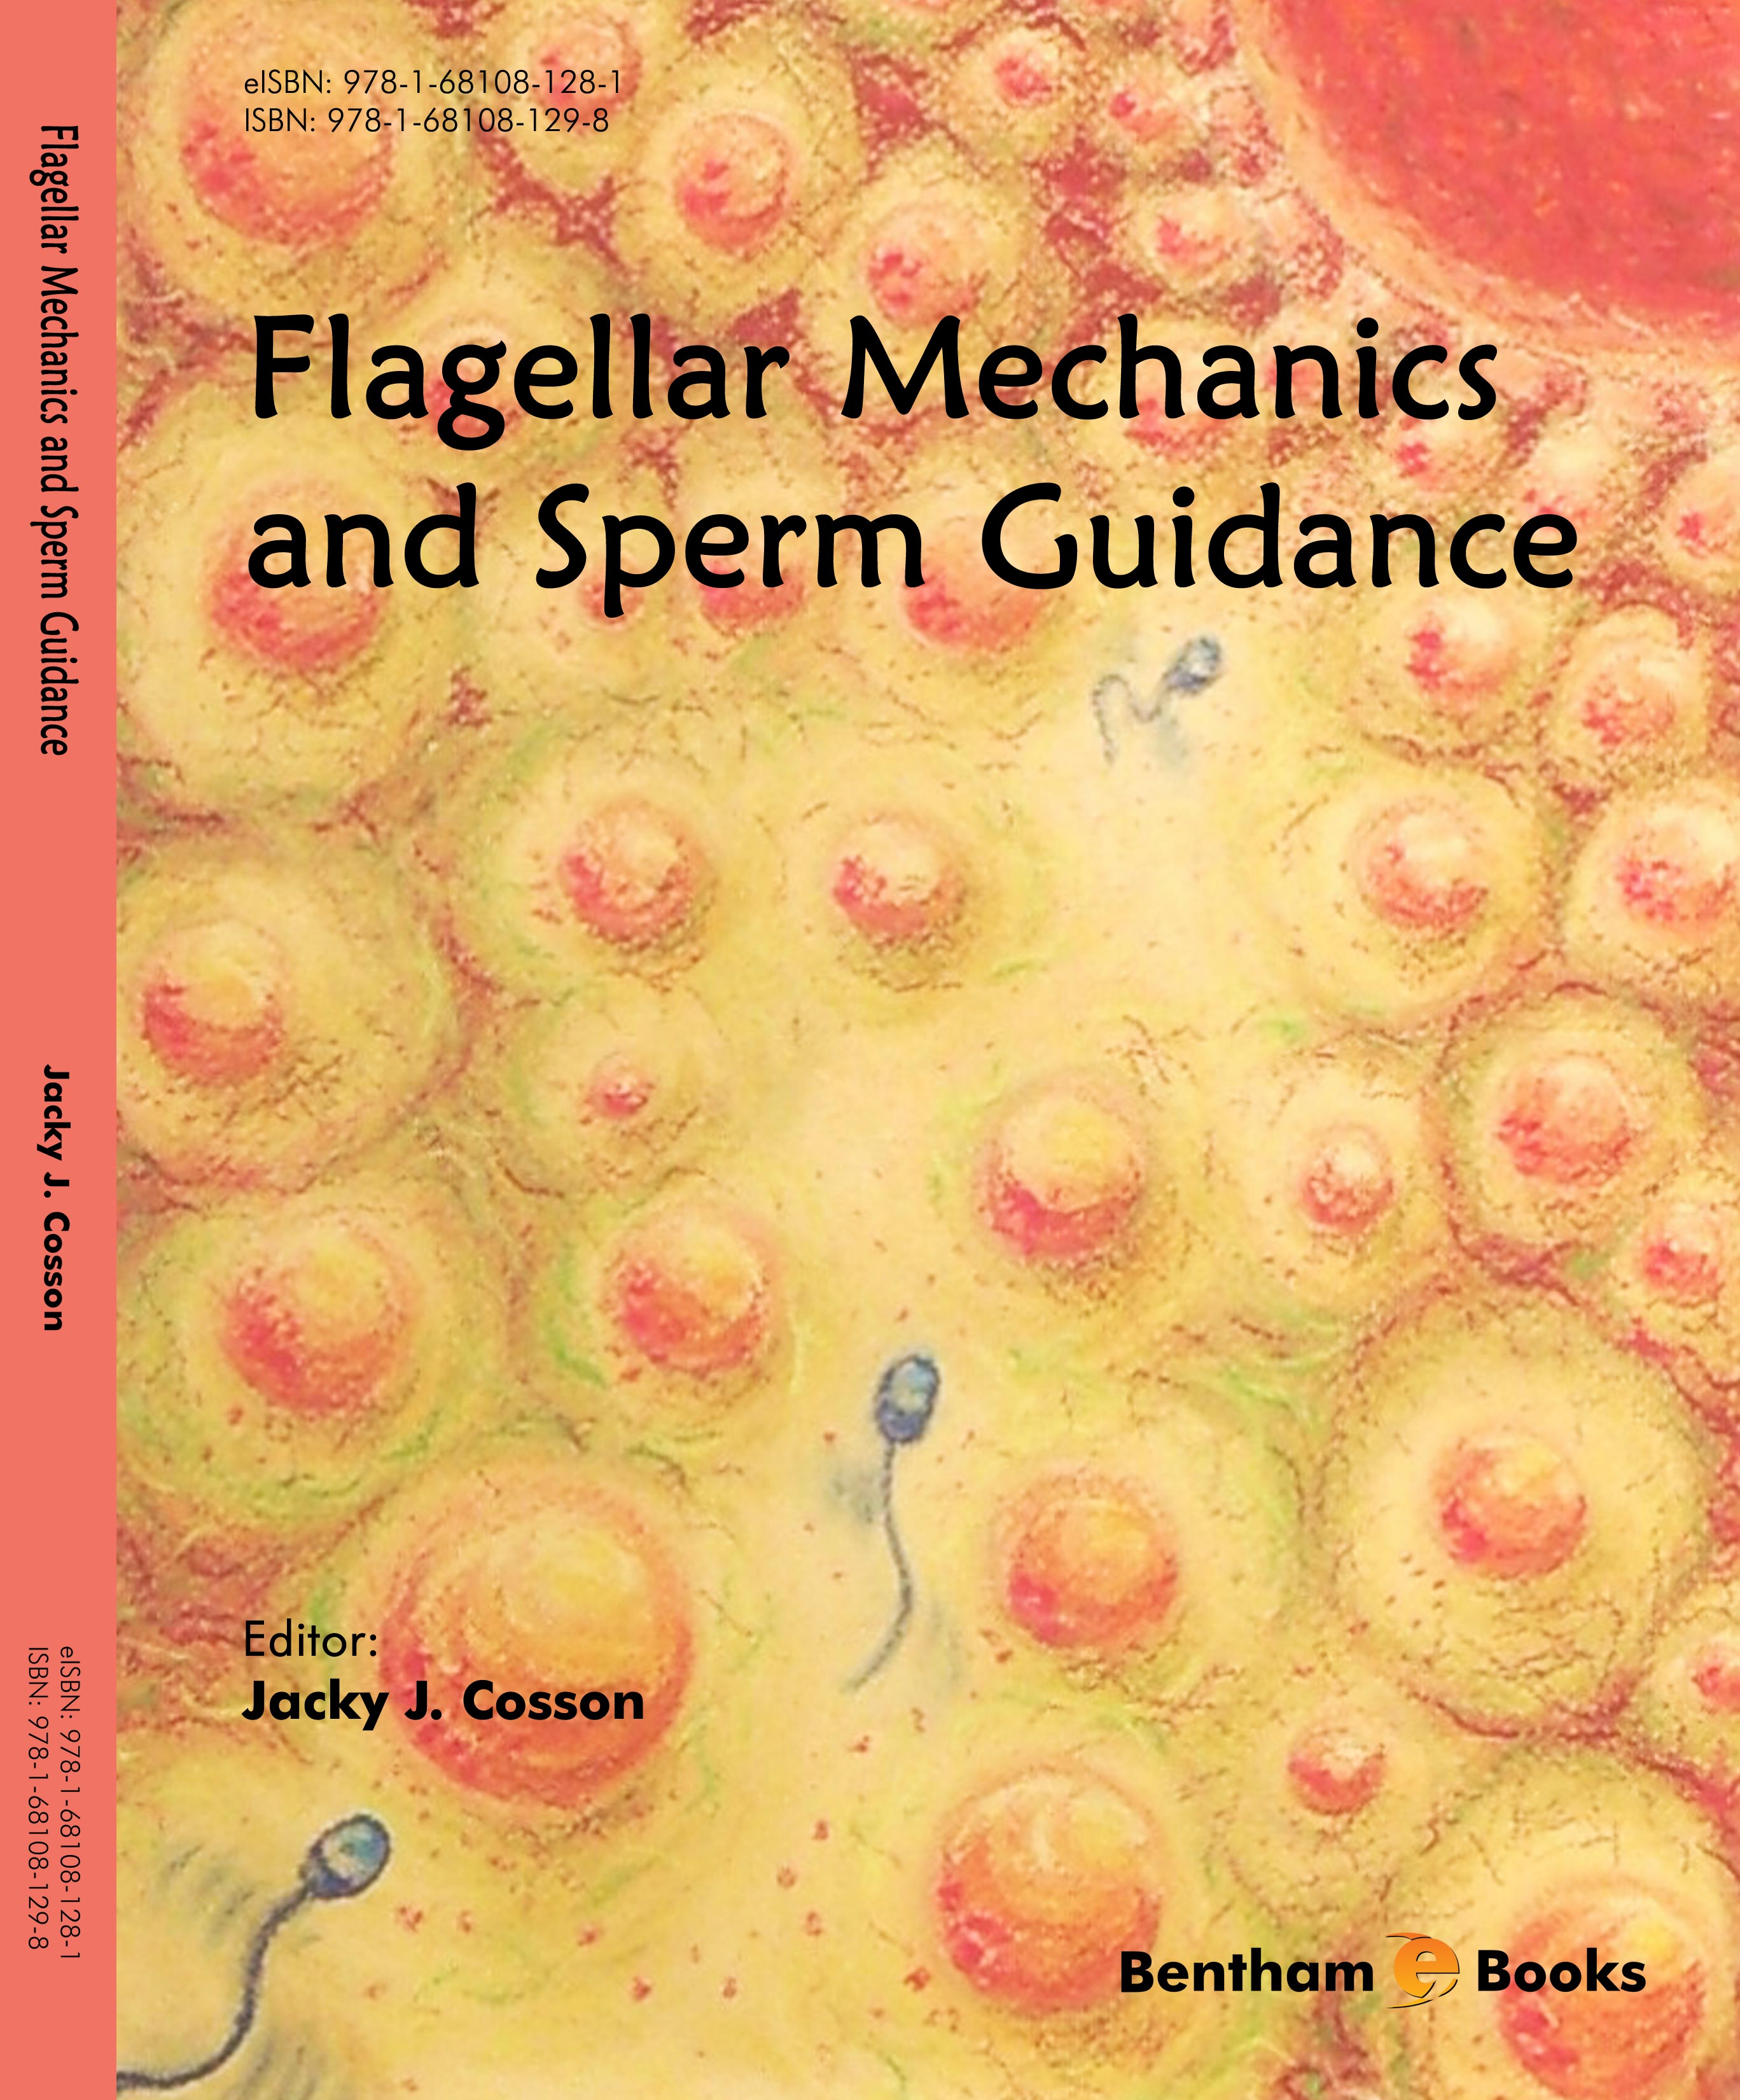 Flagellar Mechanics and Sperm Guidance